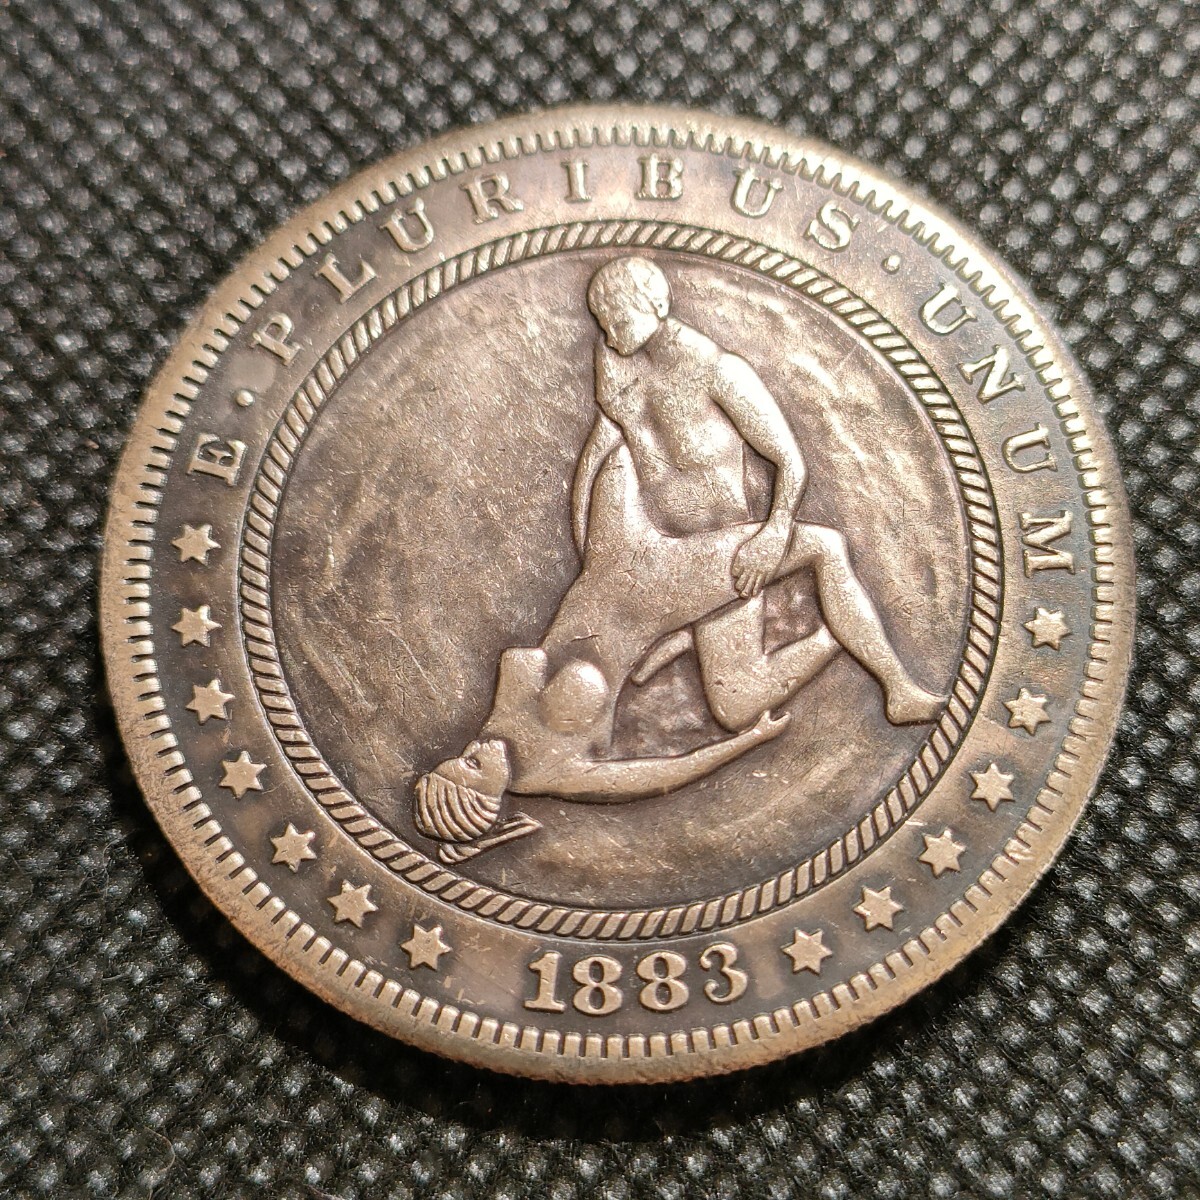 6625 アメリカ古銭 ルンペン 約38mm イーグル チャレンジコイン ゴルフマーカー コイン アンティーク ホーボーの画像1